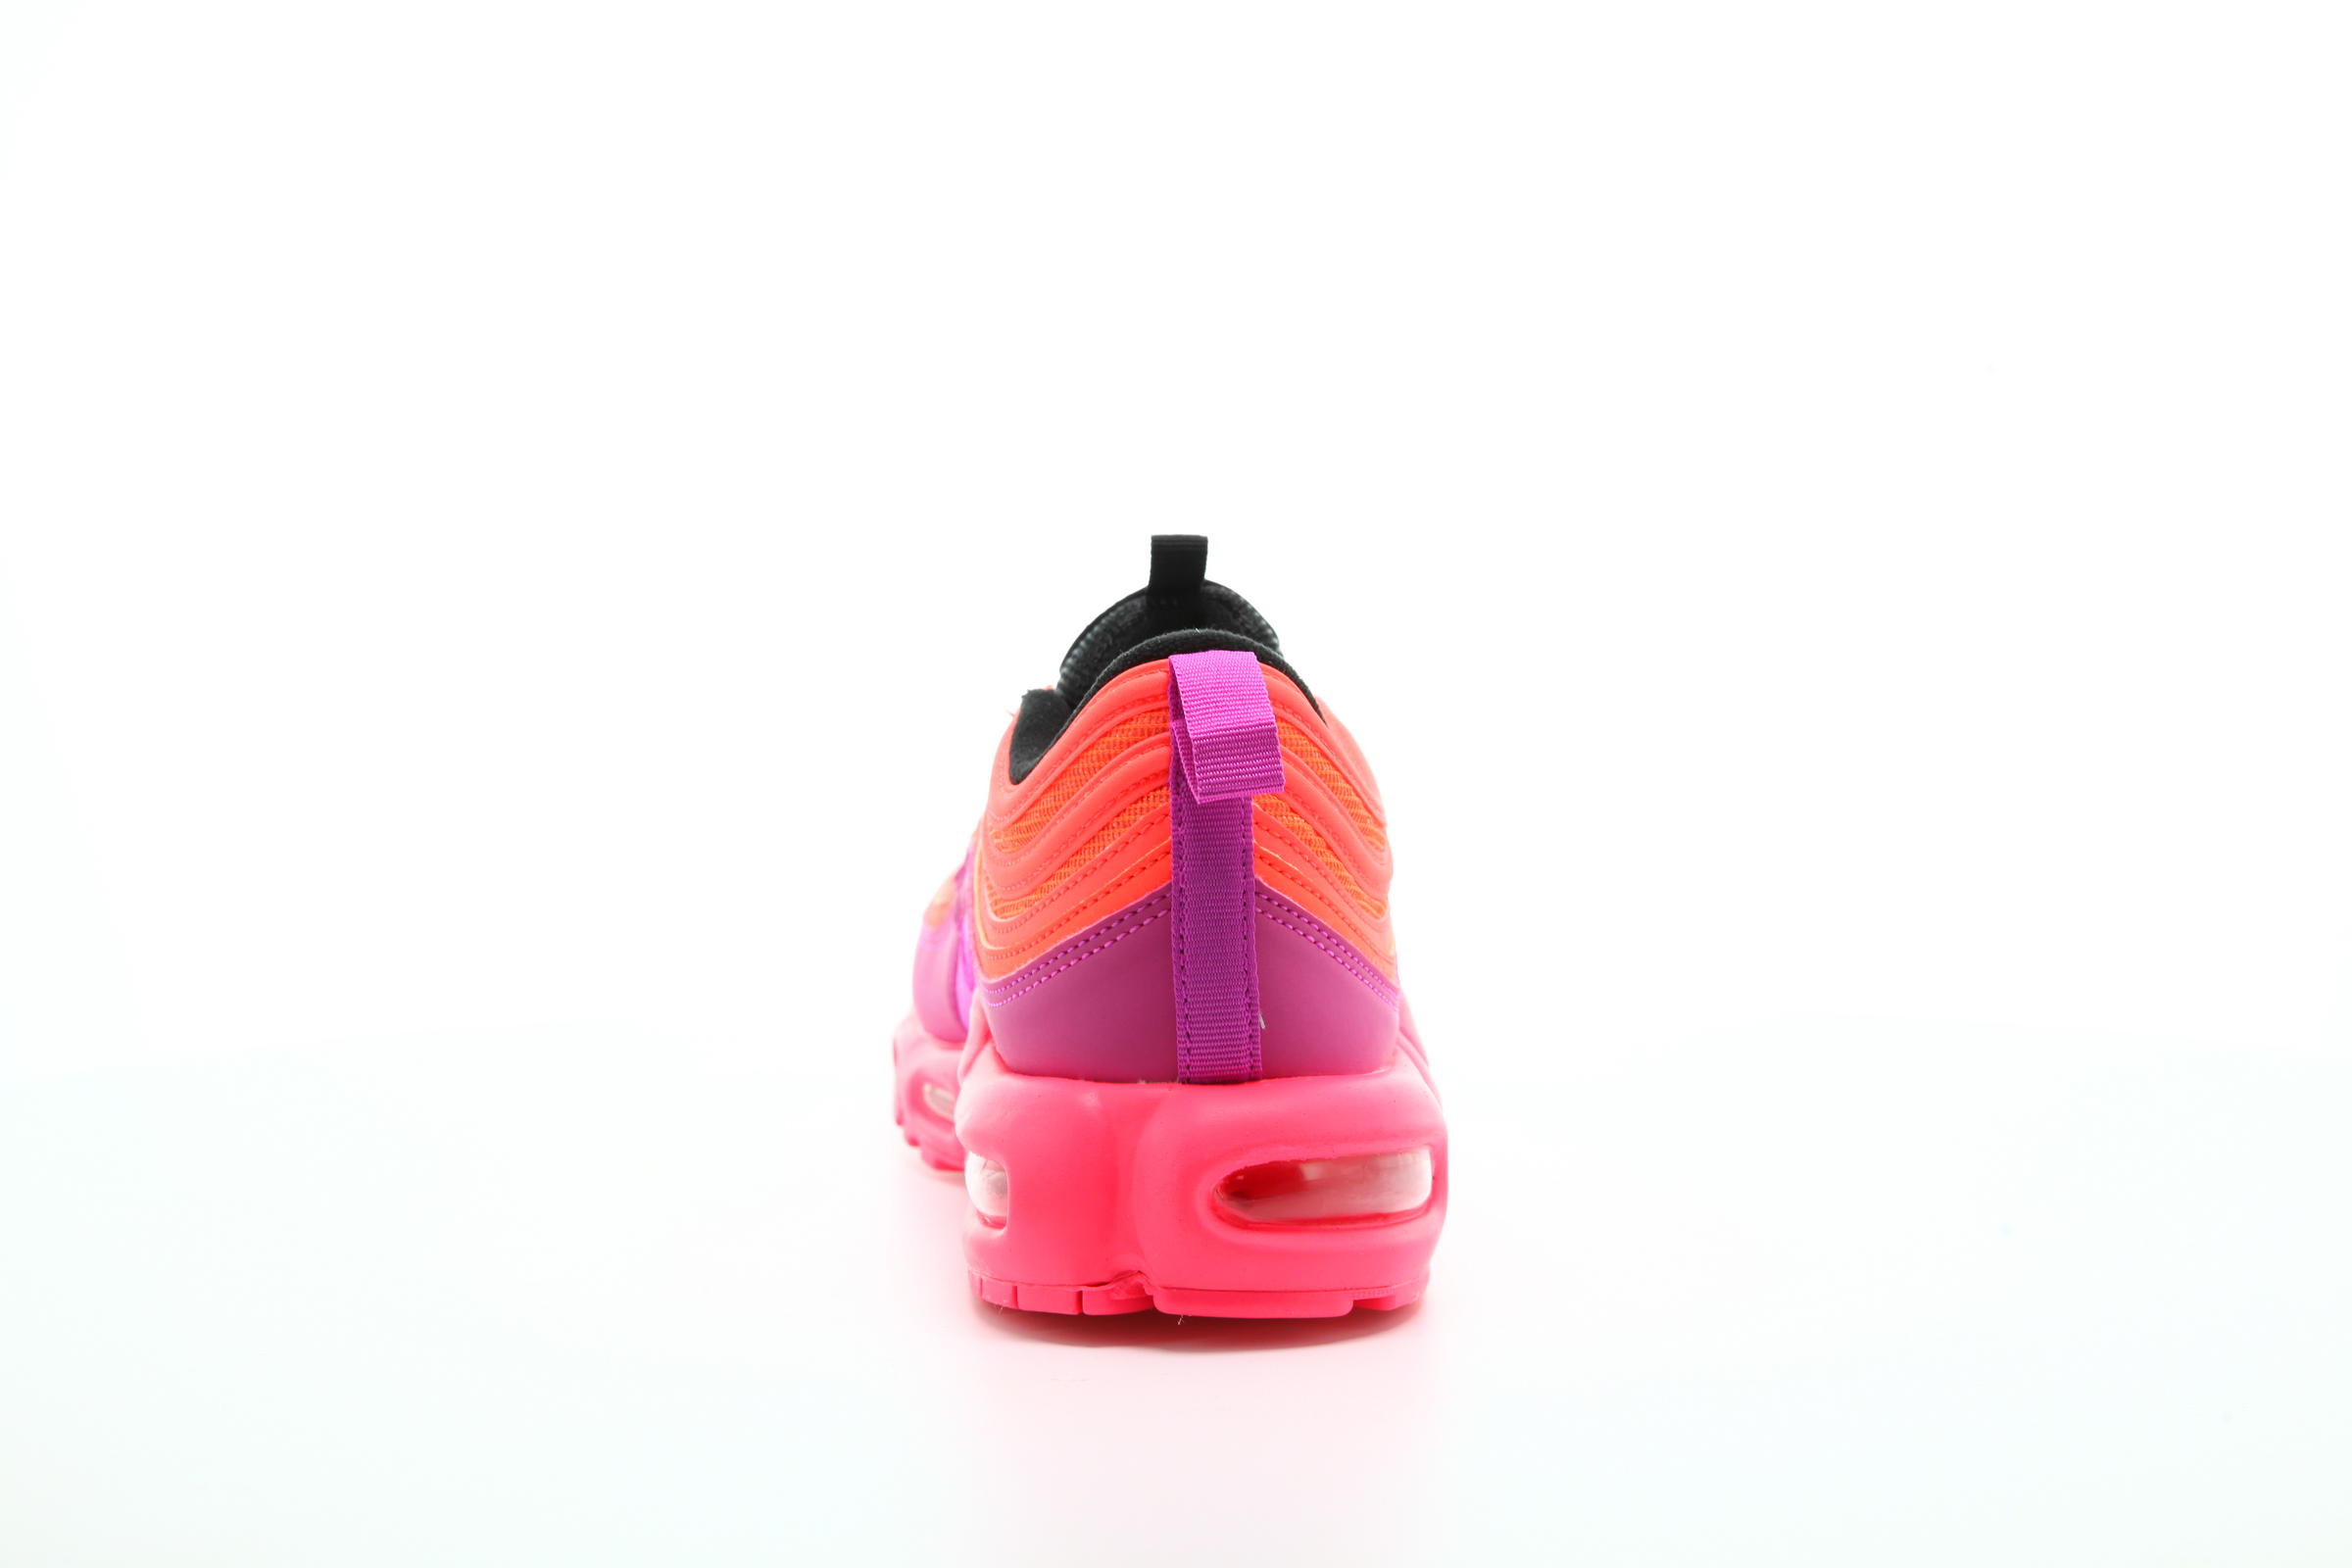 Nike Air Max Plus 97 "Racer Pink"